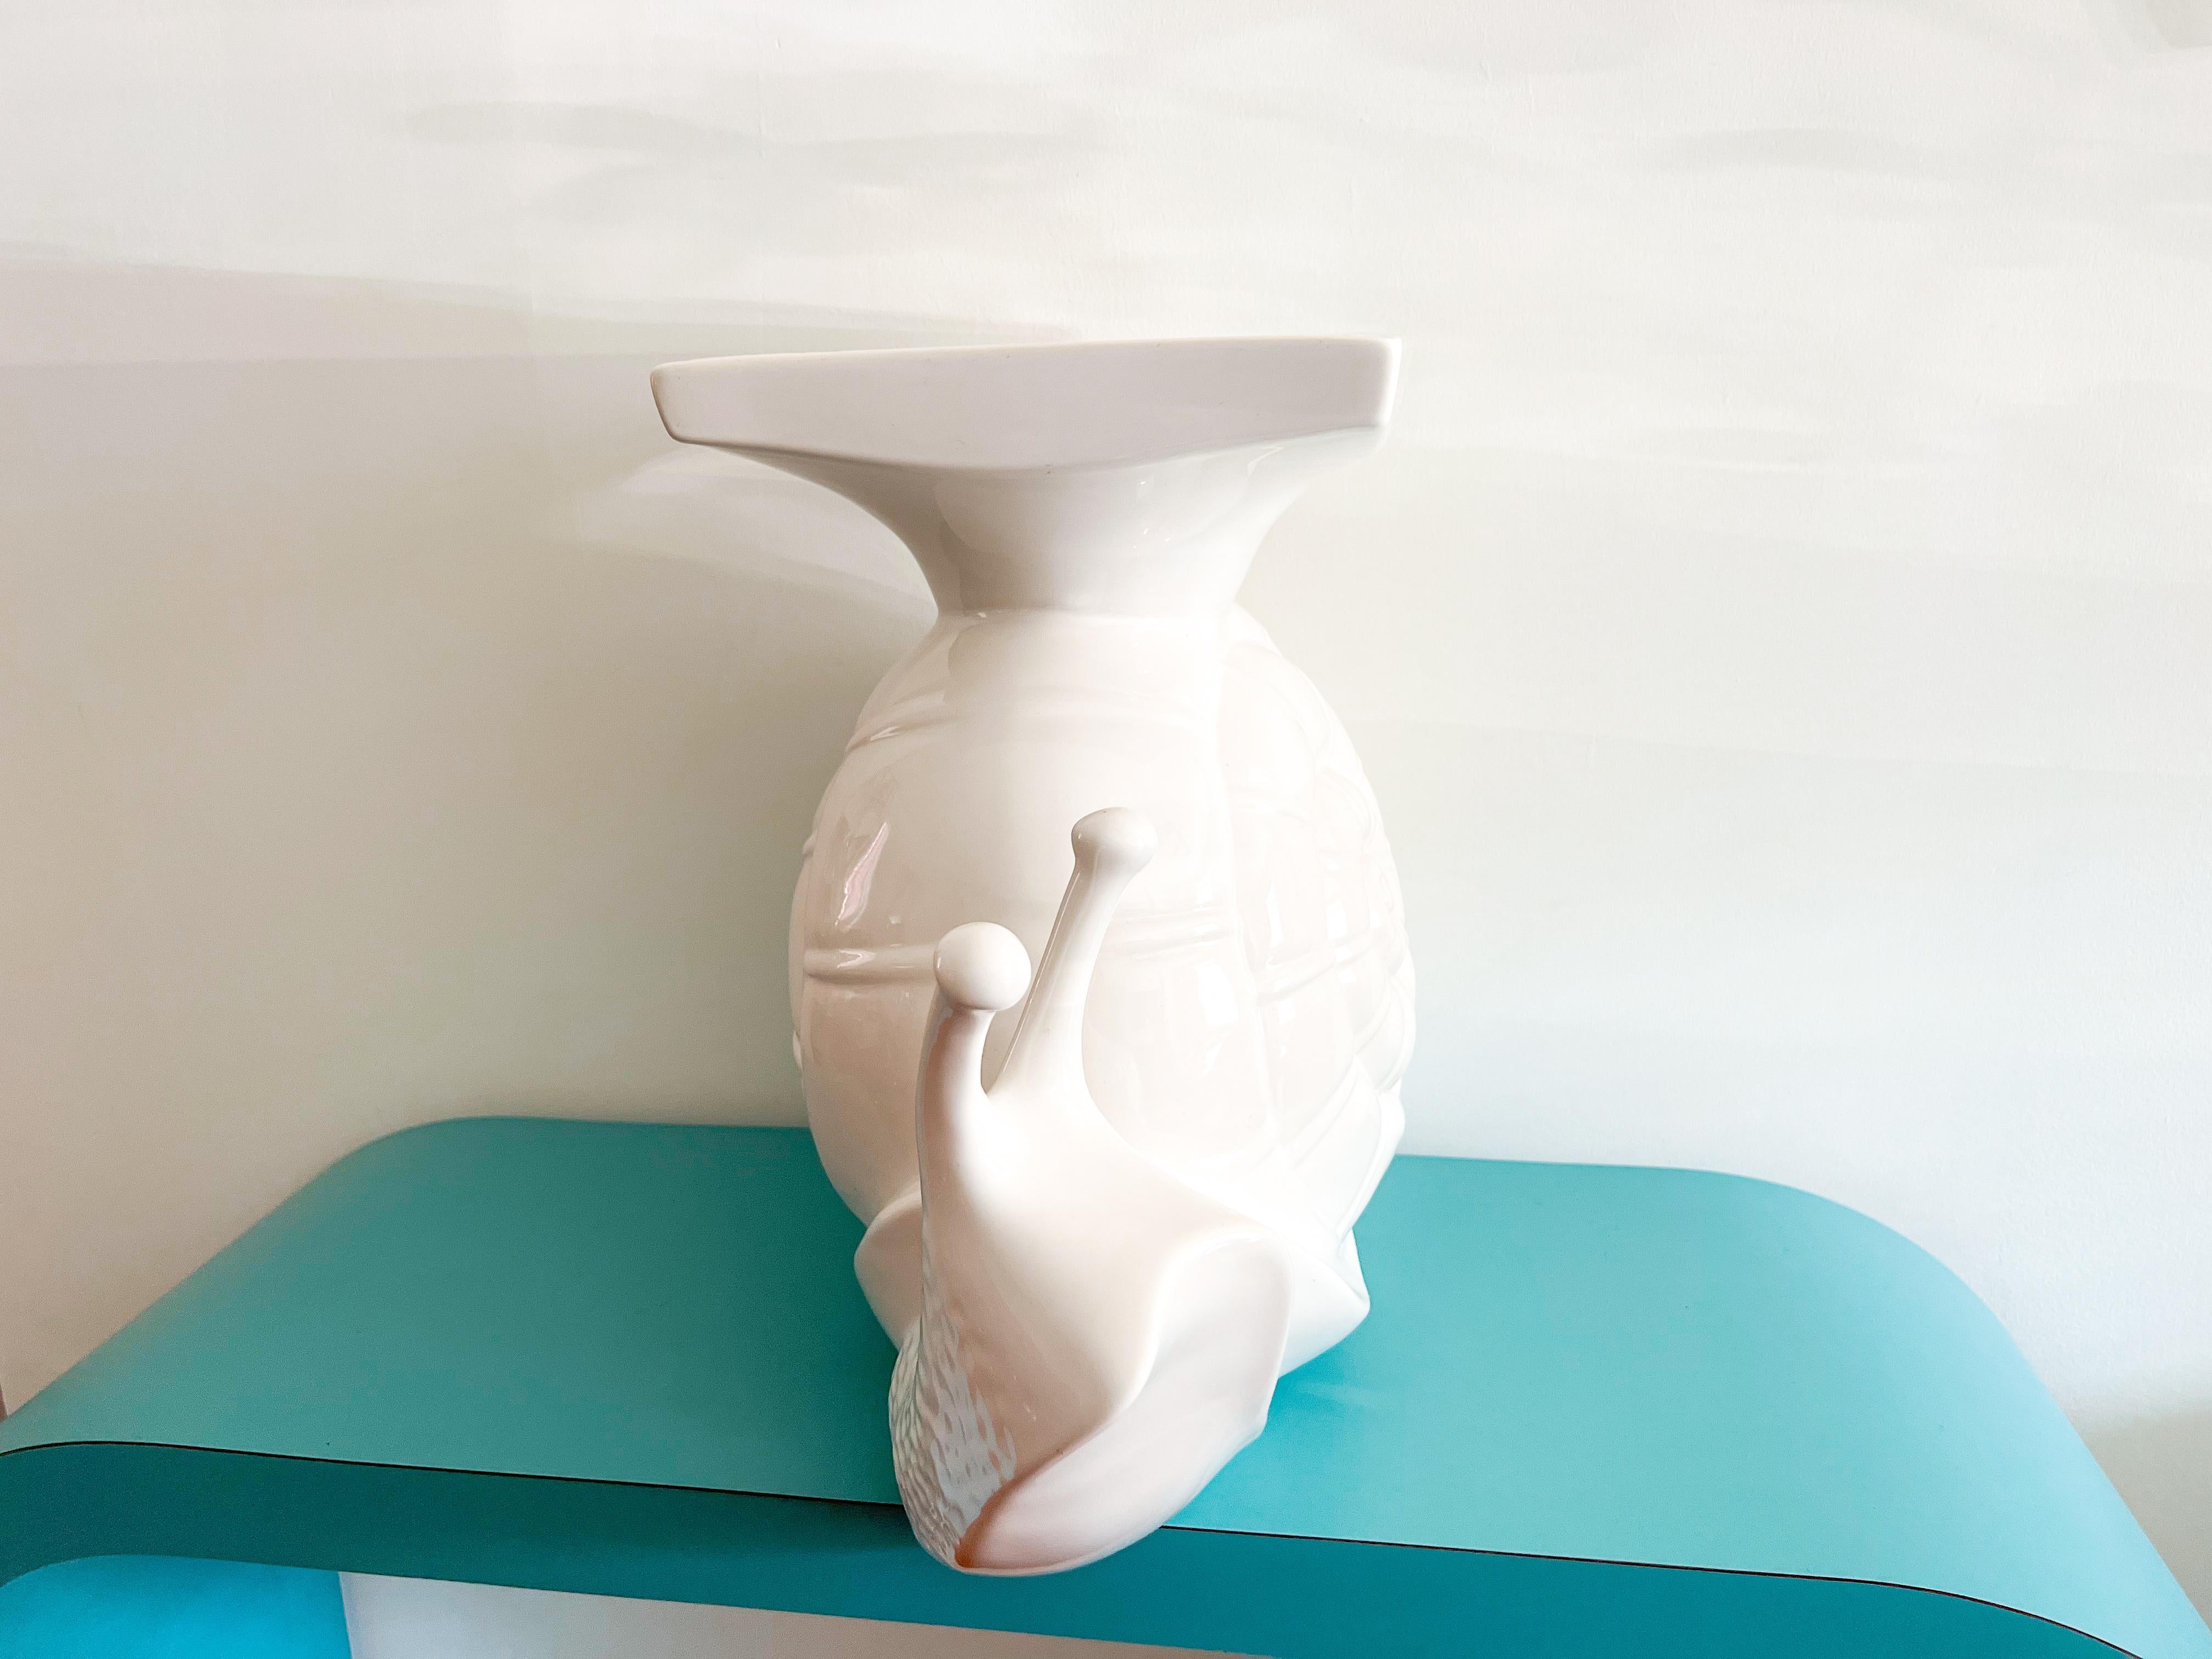 Ein unverwechselbarer Gartentisch/Ständer aus weiß glasierter Keramik mit einem einzigartigen und außergewöhnlichen Schneckendesign. 
Dieser Artikel ist eine ideale Ergänzung für alle, die ein besonderes Stück suchen. Er ist sehr robust und kann